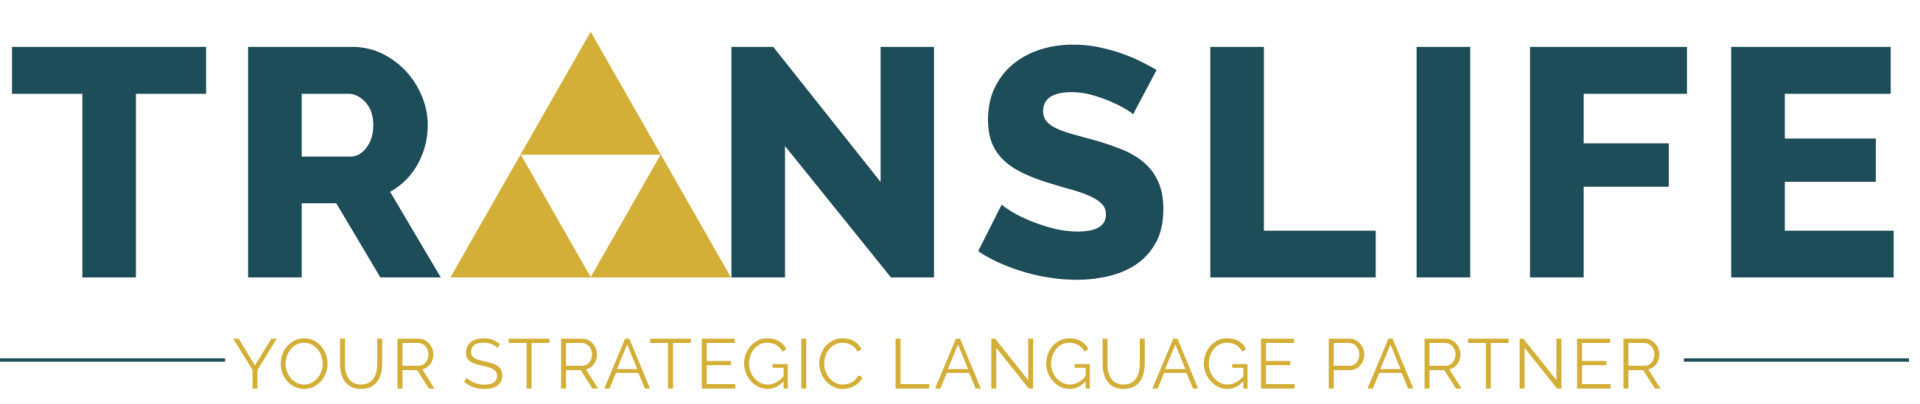 Certified Translation Service Agency - TRANSLIFE